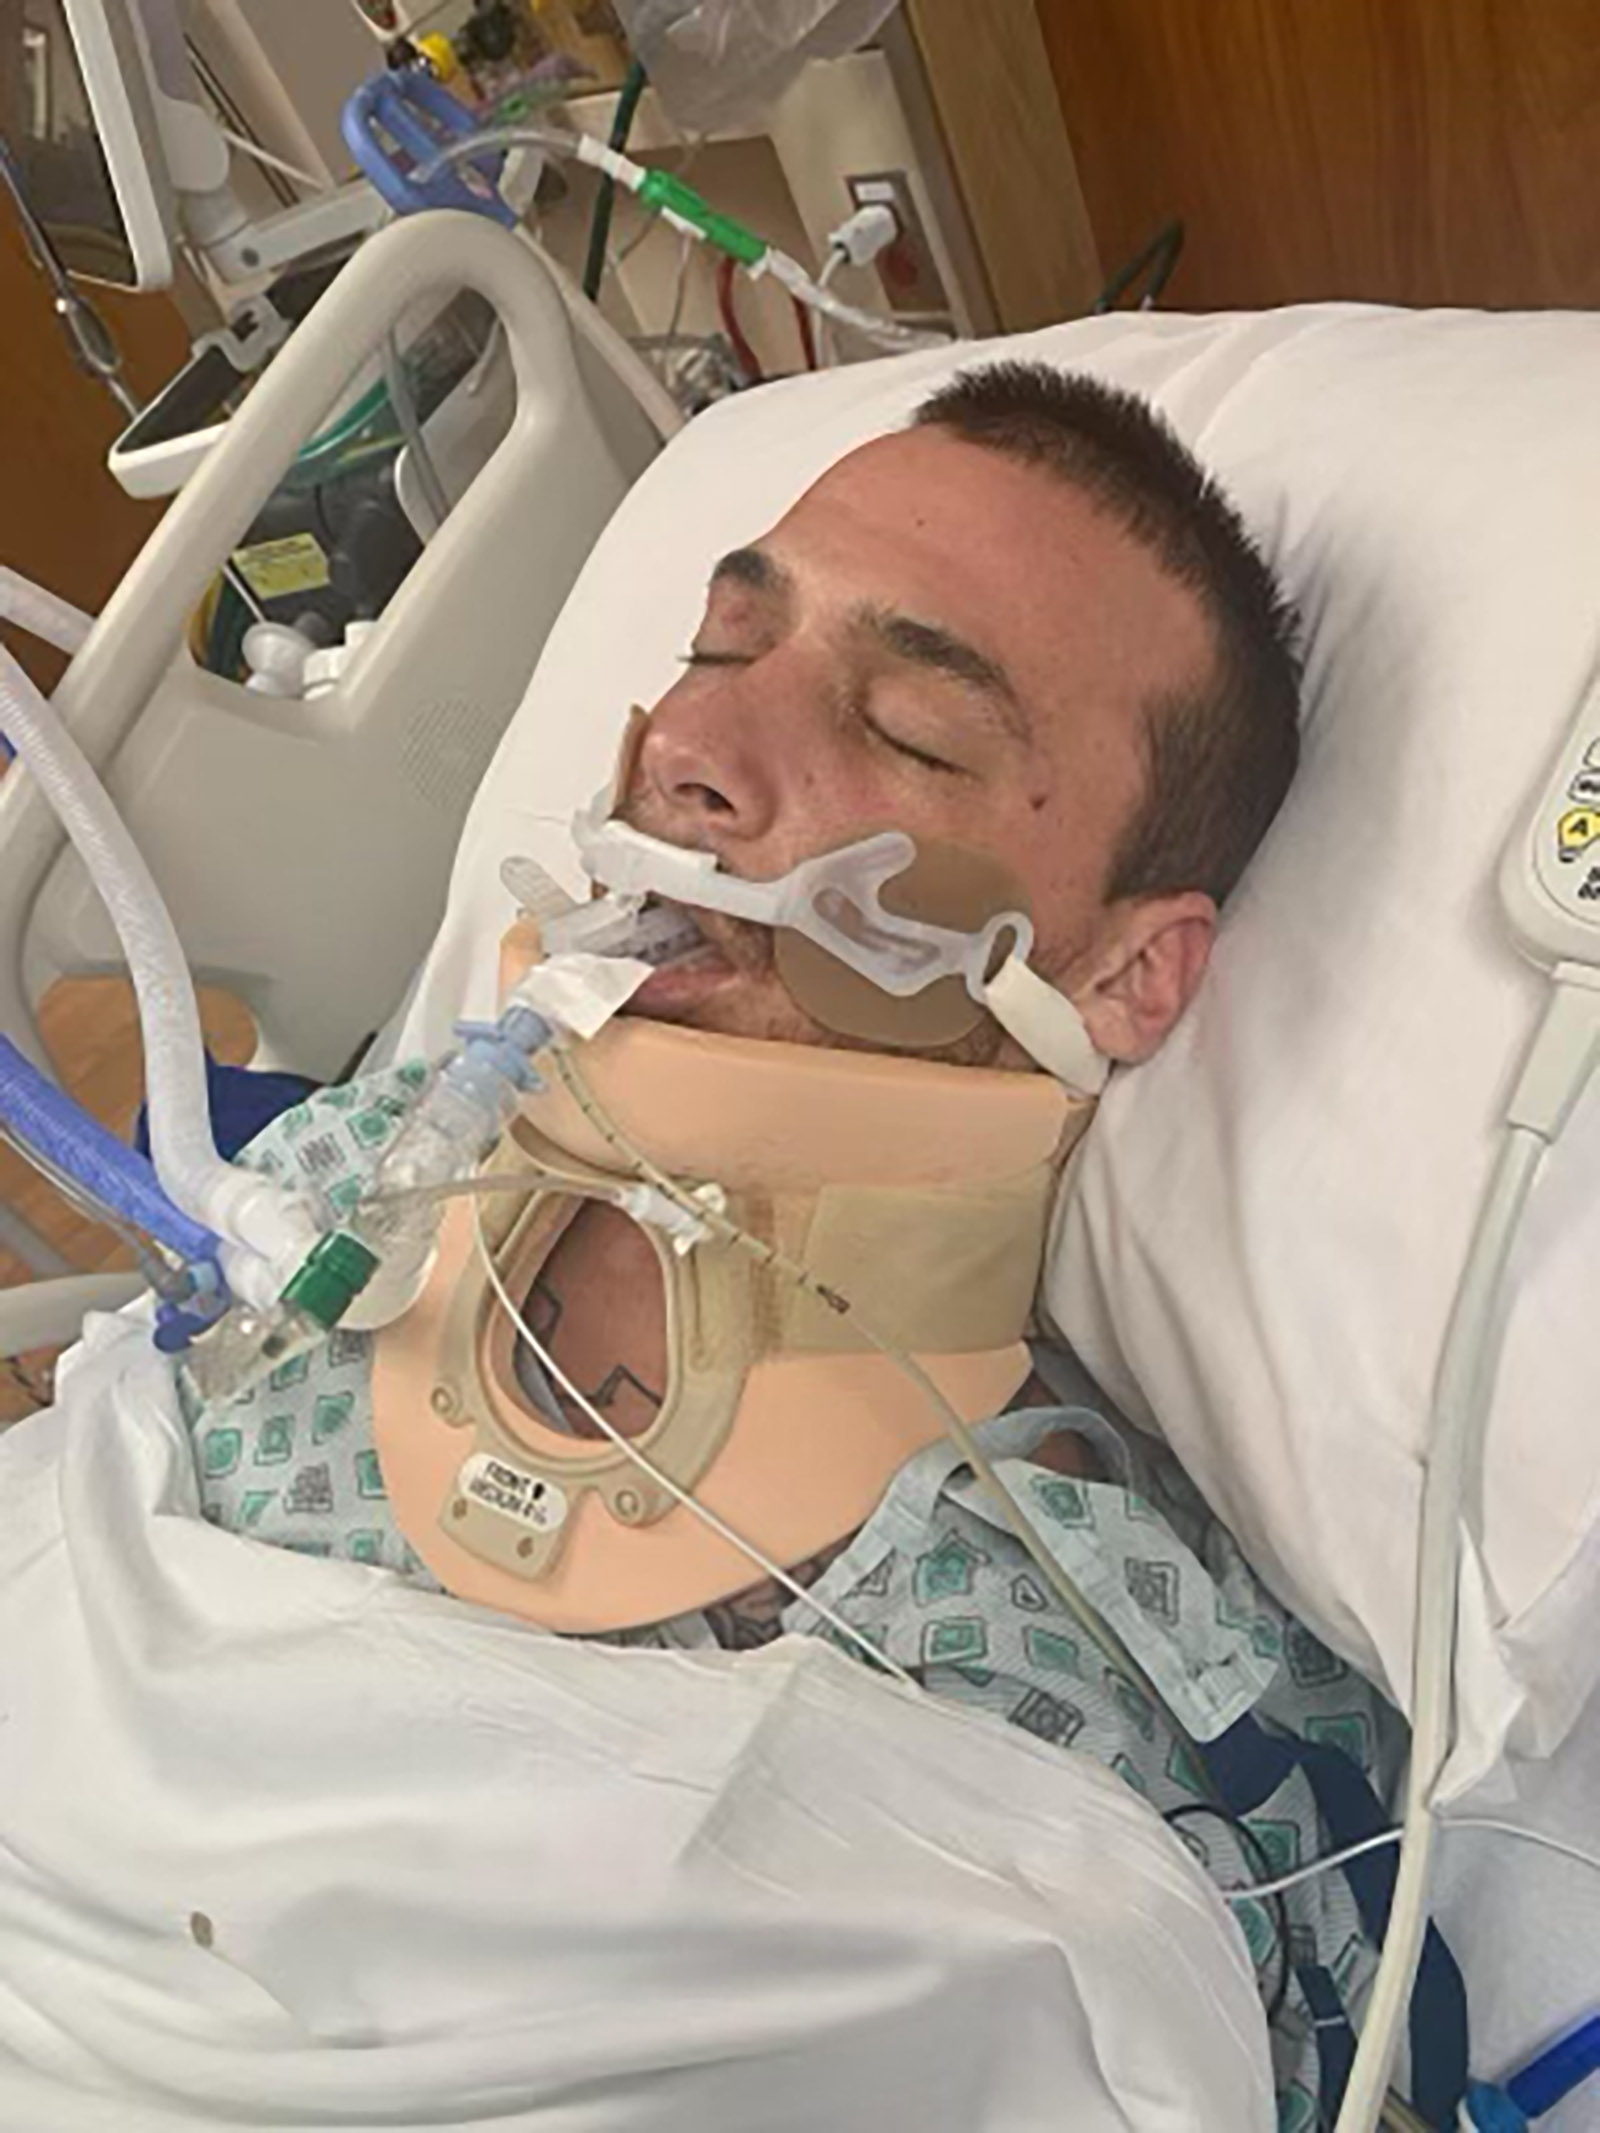 الکساندر ریوس بیهوش روی تخت بیمارستان دراز کشیده است.  او با دستگاه تنفس مصنوعی تحت درمان است و به گردن بند مجهز شده است.